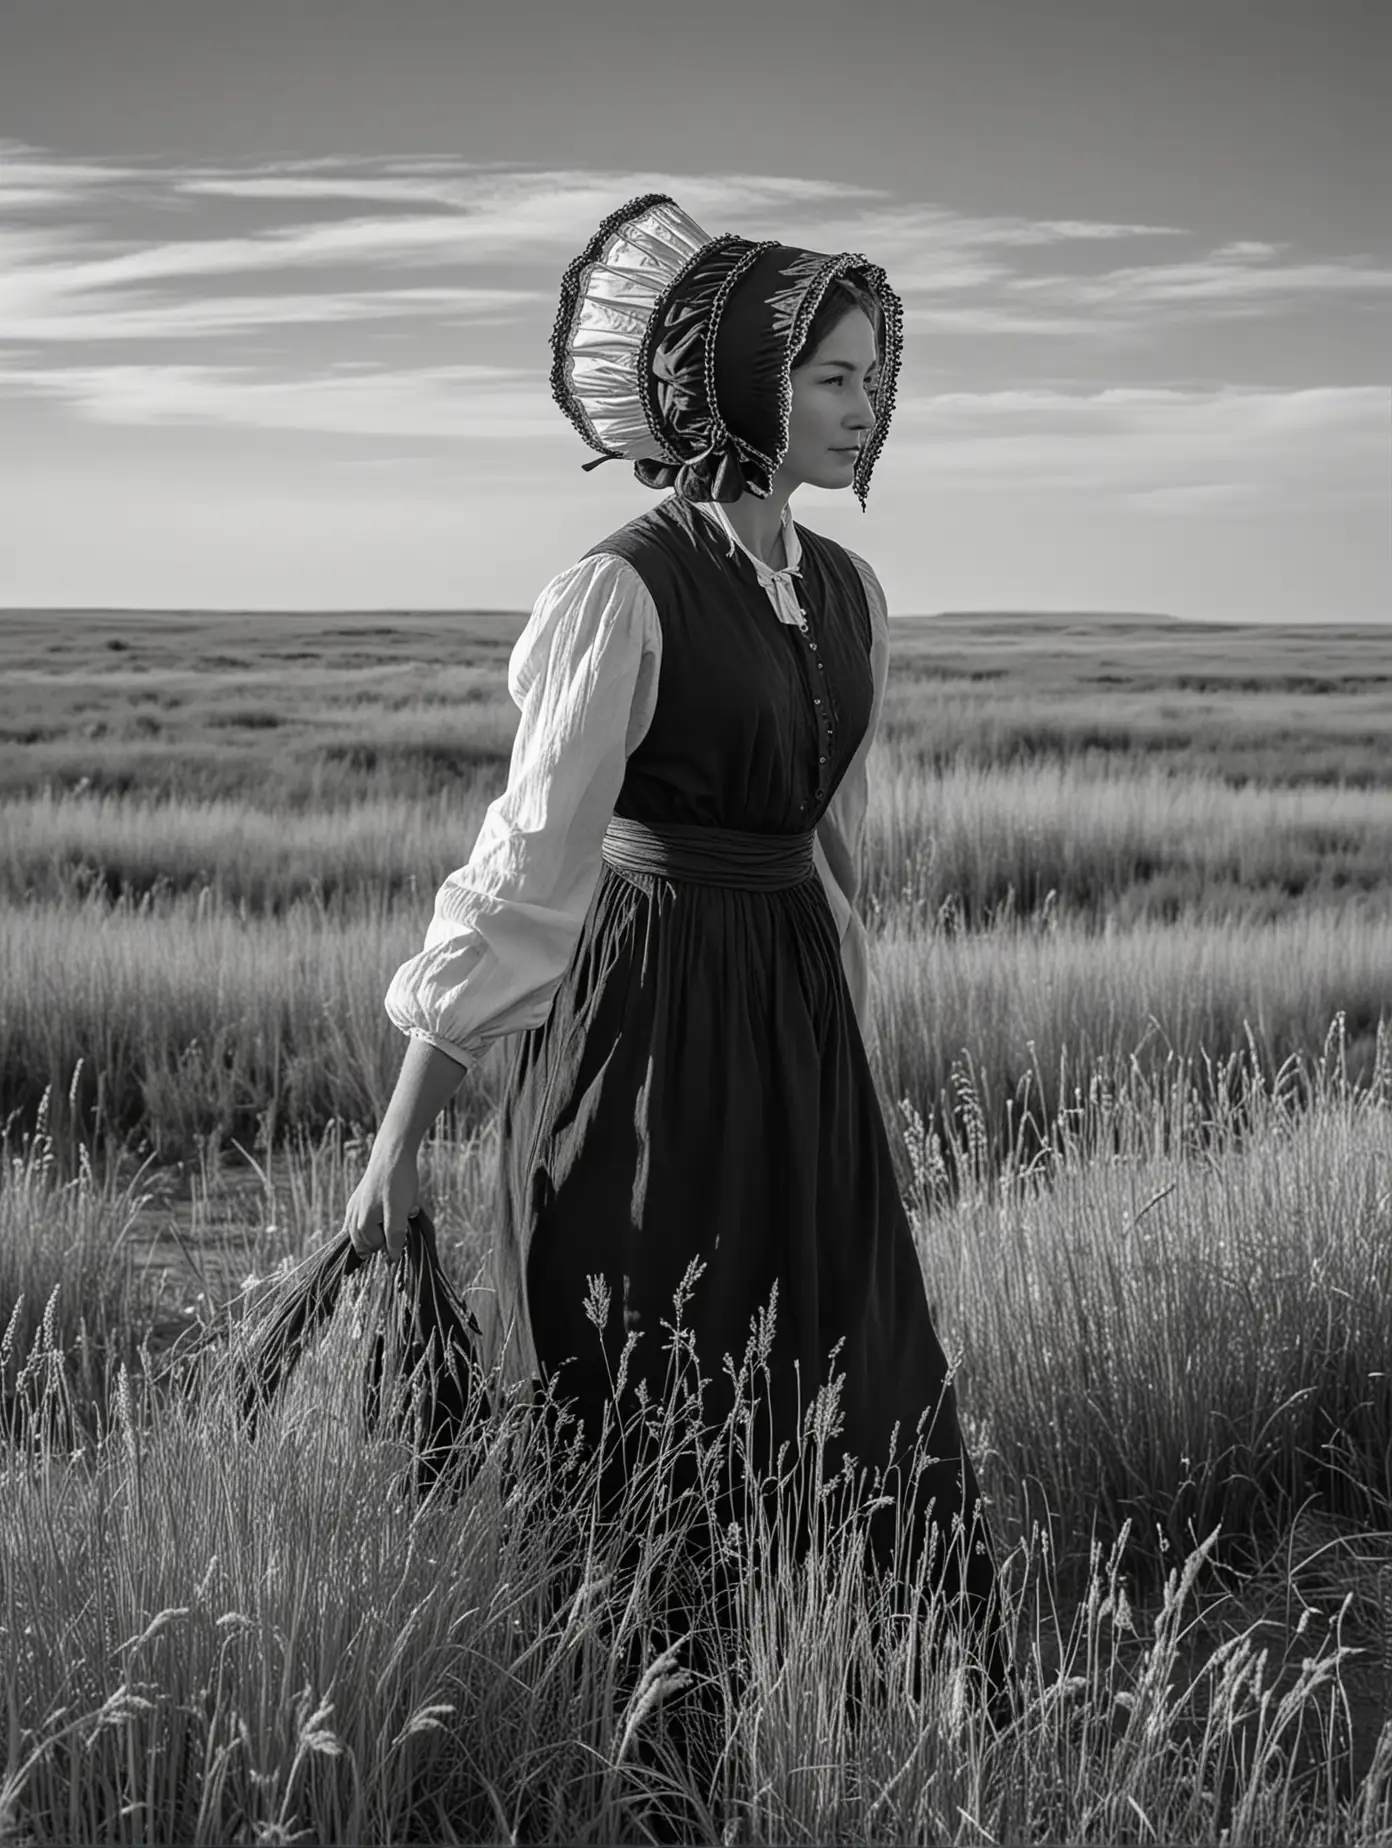 Caucasian Pioneer Woman Arriving at Vast Prairie